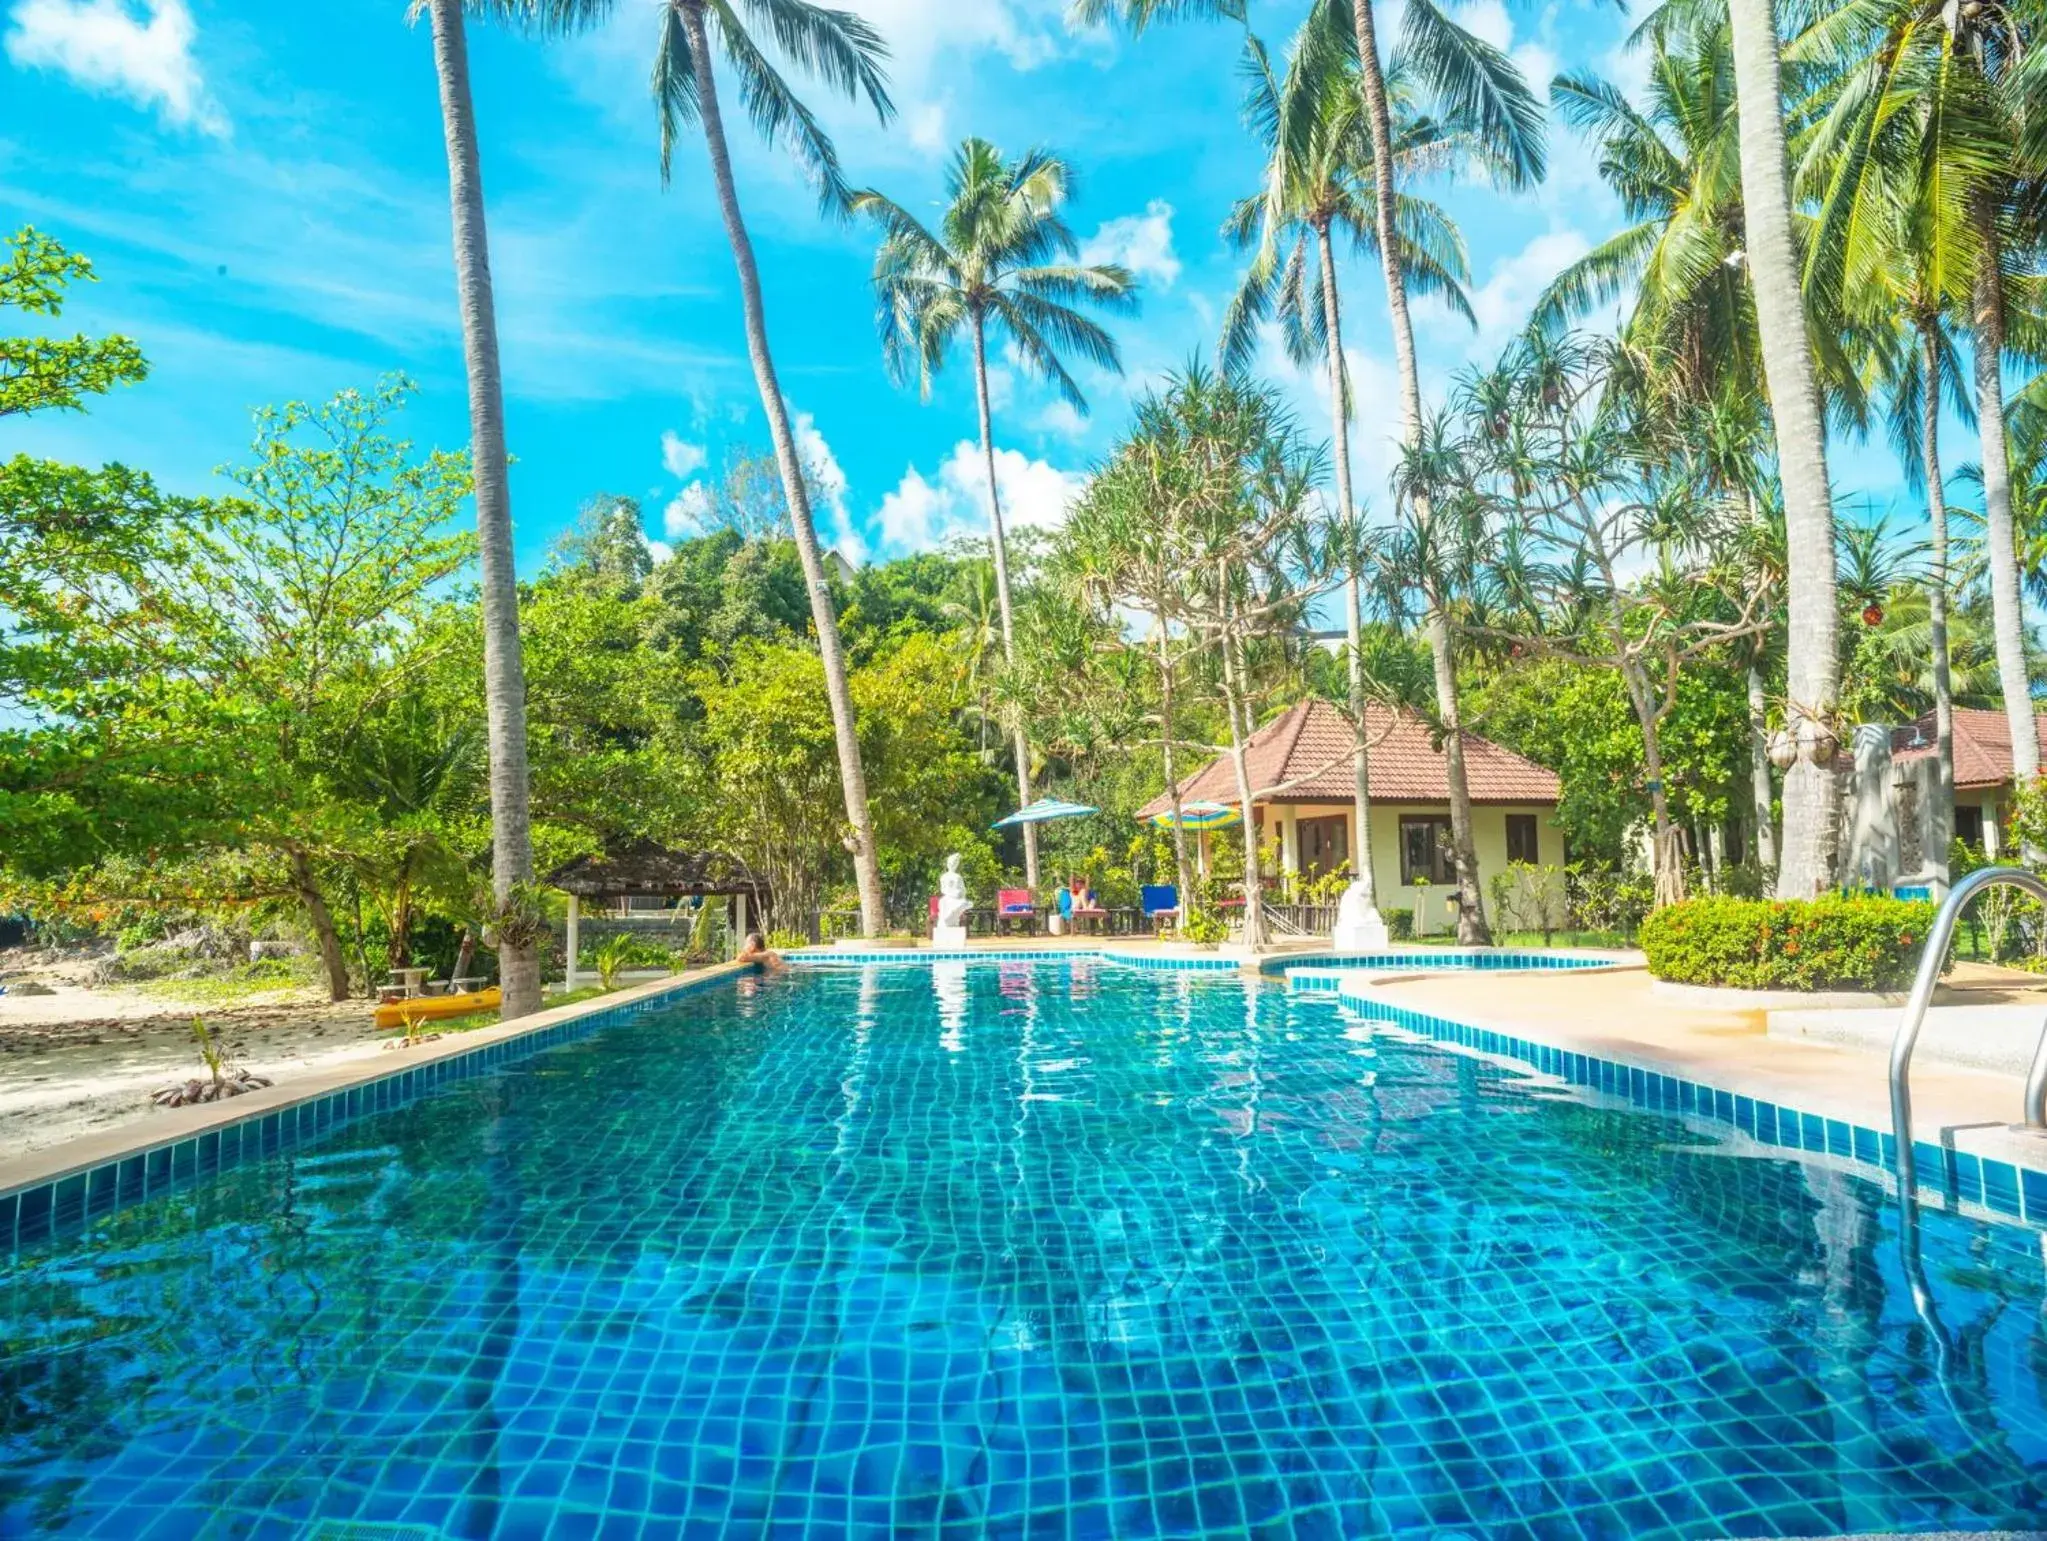 Swimming Pool in Am Samui Resort Taling Ngam